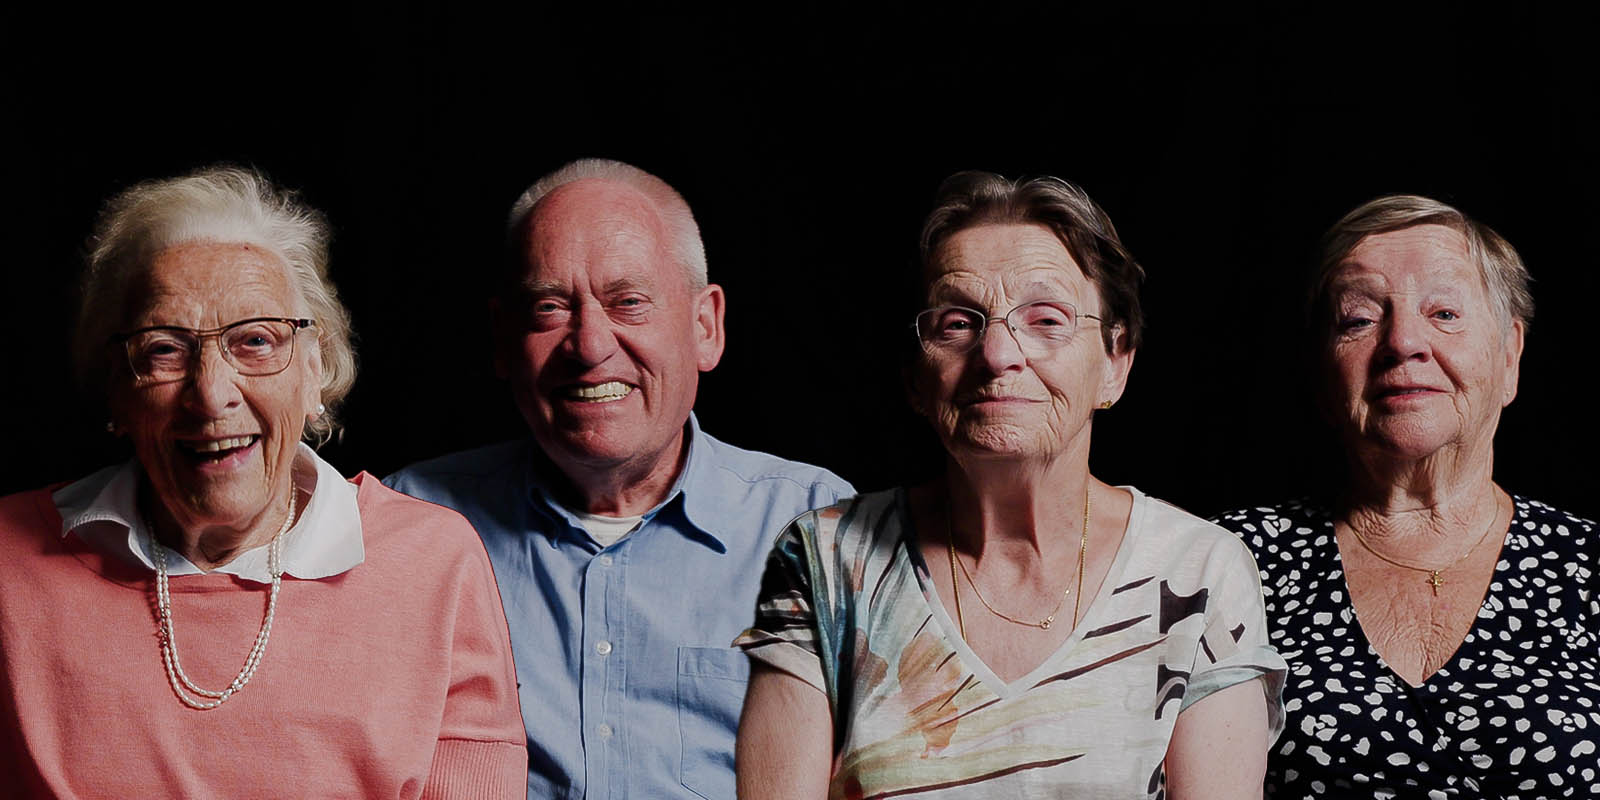 Als verzorgende IG beteken je veel voor onze bewoners met dementie. Wat precies, dat hebben we aan henzelf gevraagd. Op de foto zien we vier bewoners op een rij, met een zwarte achtergrond. Ze kijken vriendelijk in de camera.